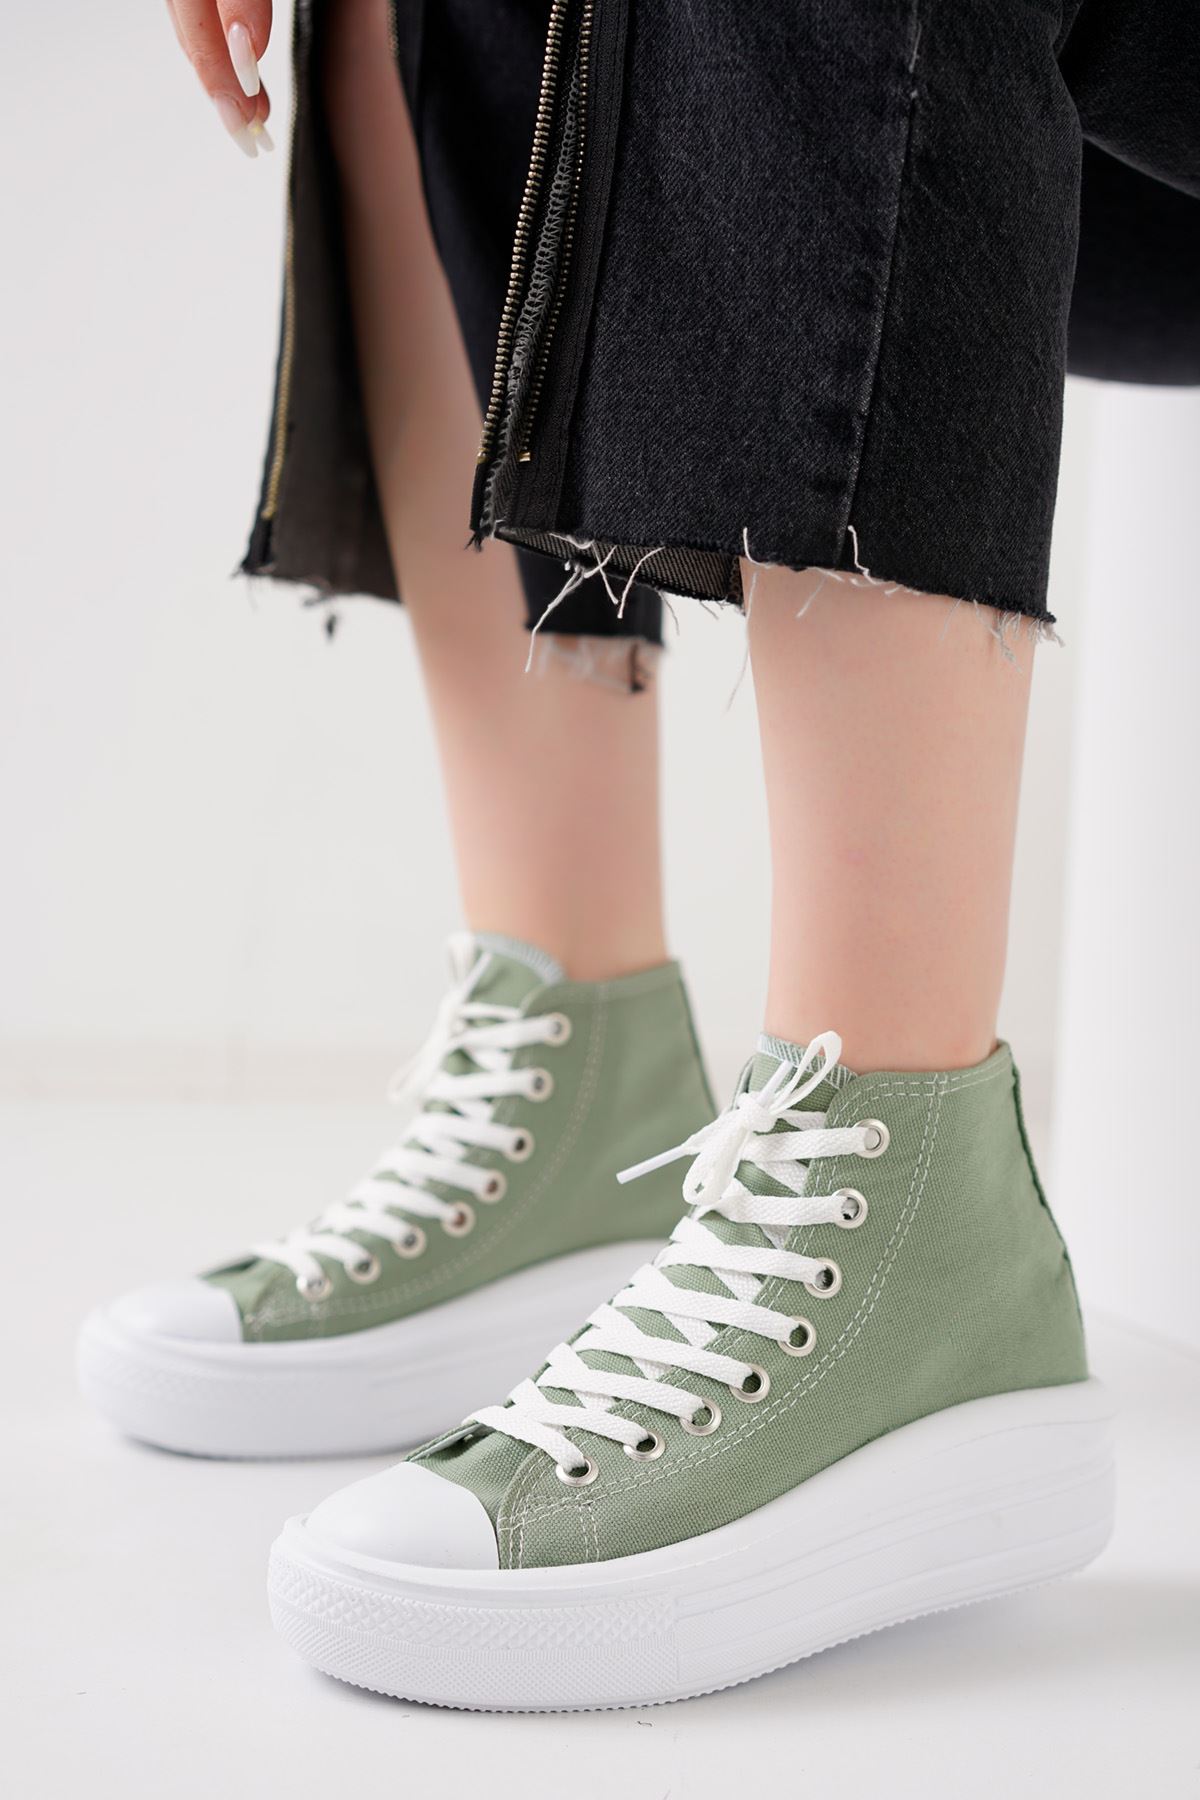 Rapindo Mint Yeşil Keten Kadın Spor Ayakkabı